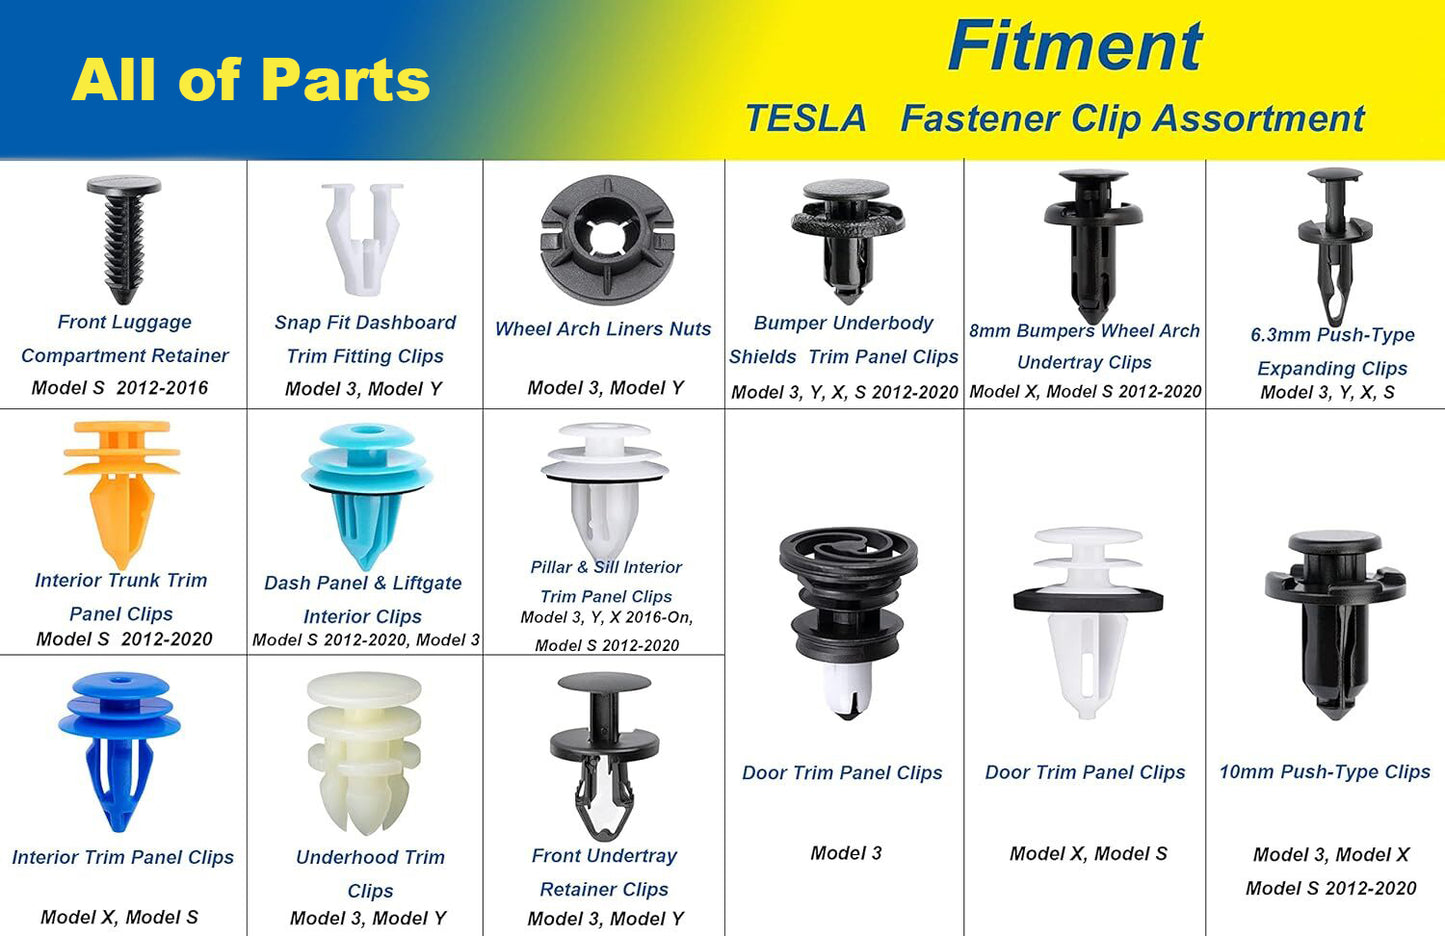 150PCS for Tesla Body Interior and Exterior Retainer Fastener Clip Assortment Interior Headliner Retainer Push Pin Clip